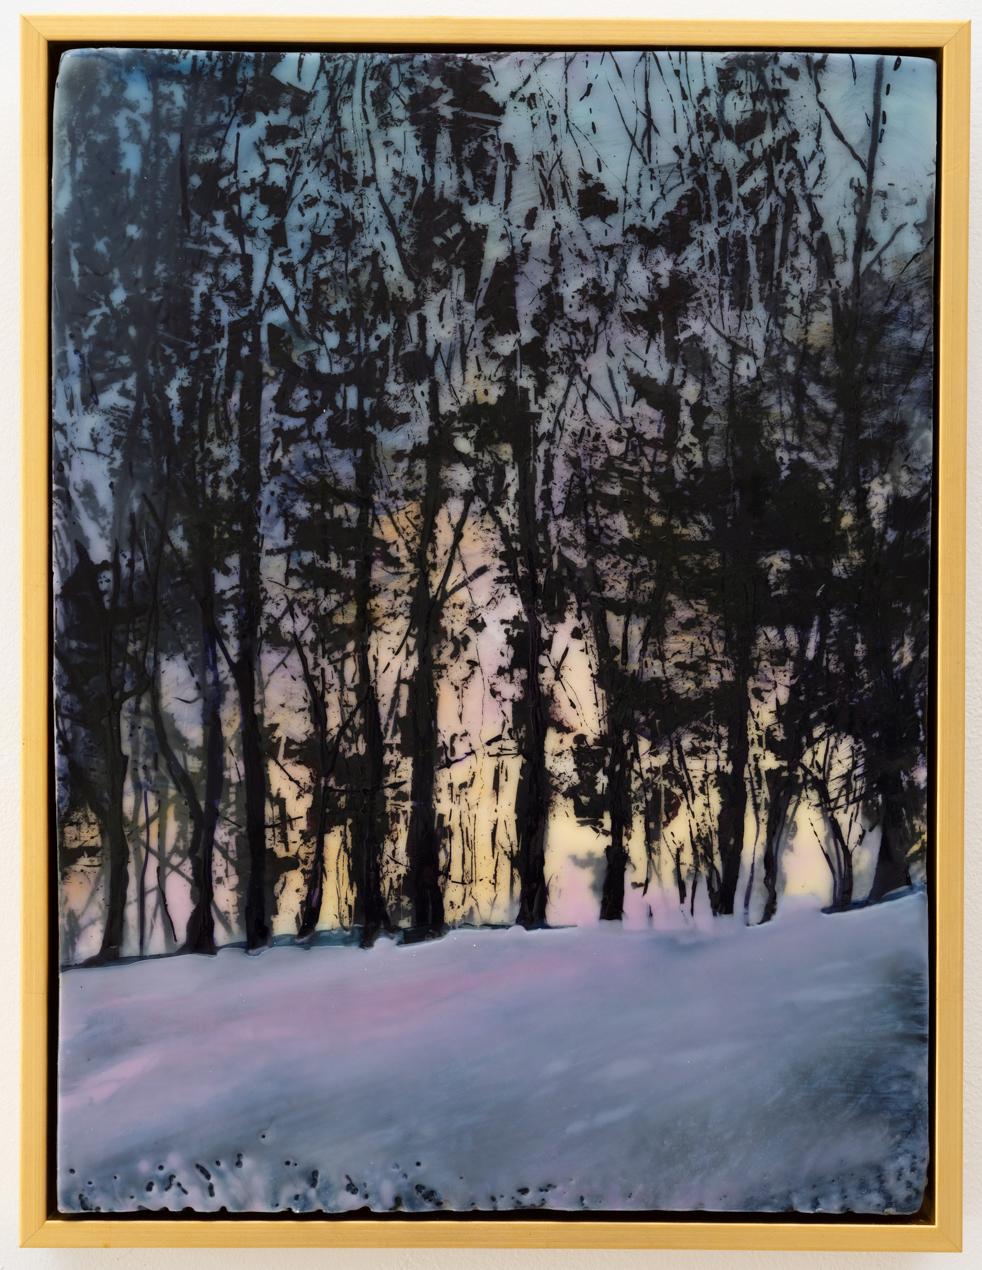 Neige de printemps (peinture contemporaine à l'encaustique d'un coucher de soleil derrière une ligne d'arbres sombre) - Contemporain Mixed Media Art par Regina Quinn 